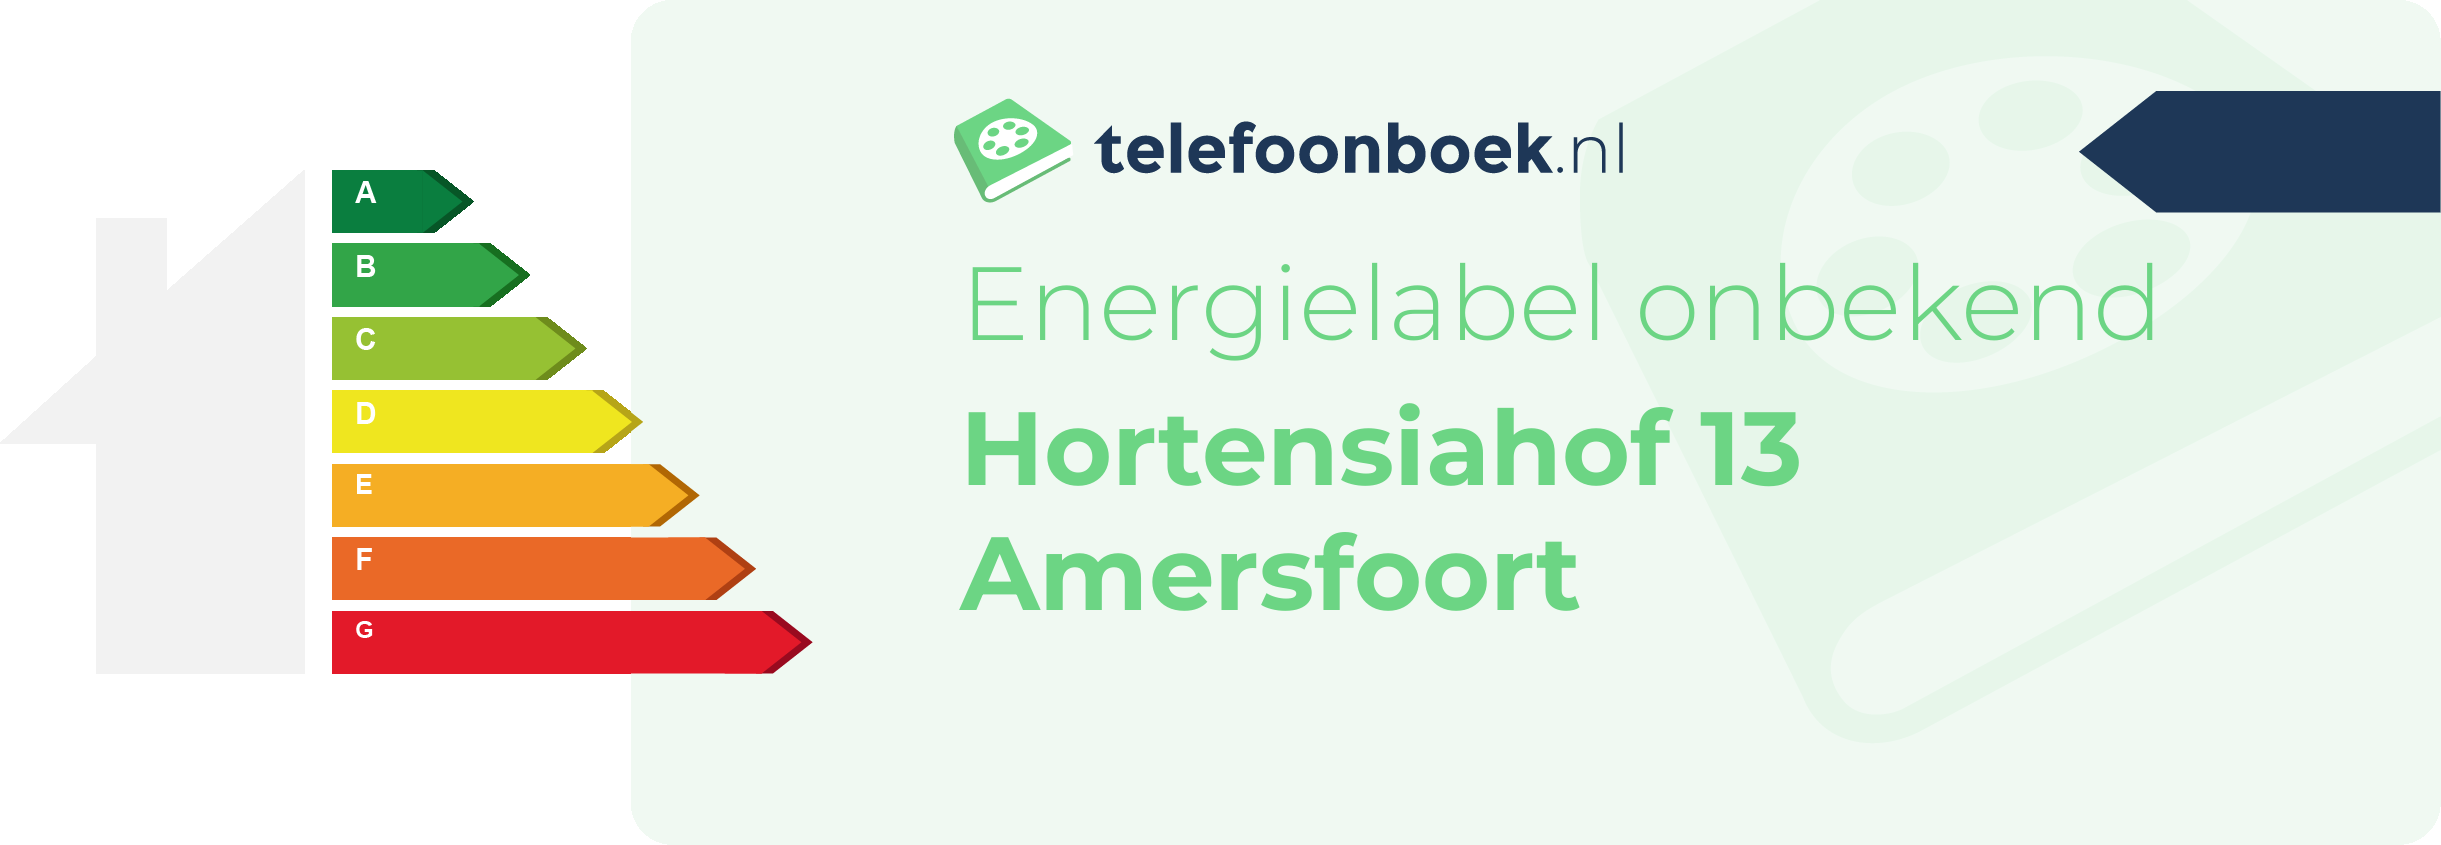 Energielabel Hortensiahof 13 Amersfoort